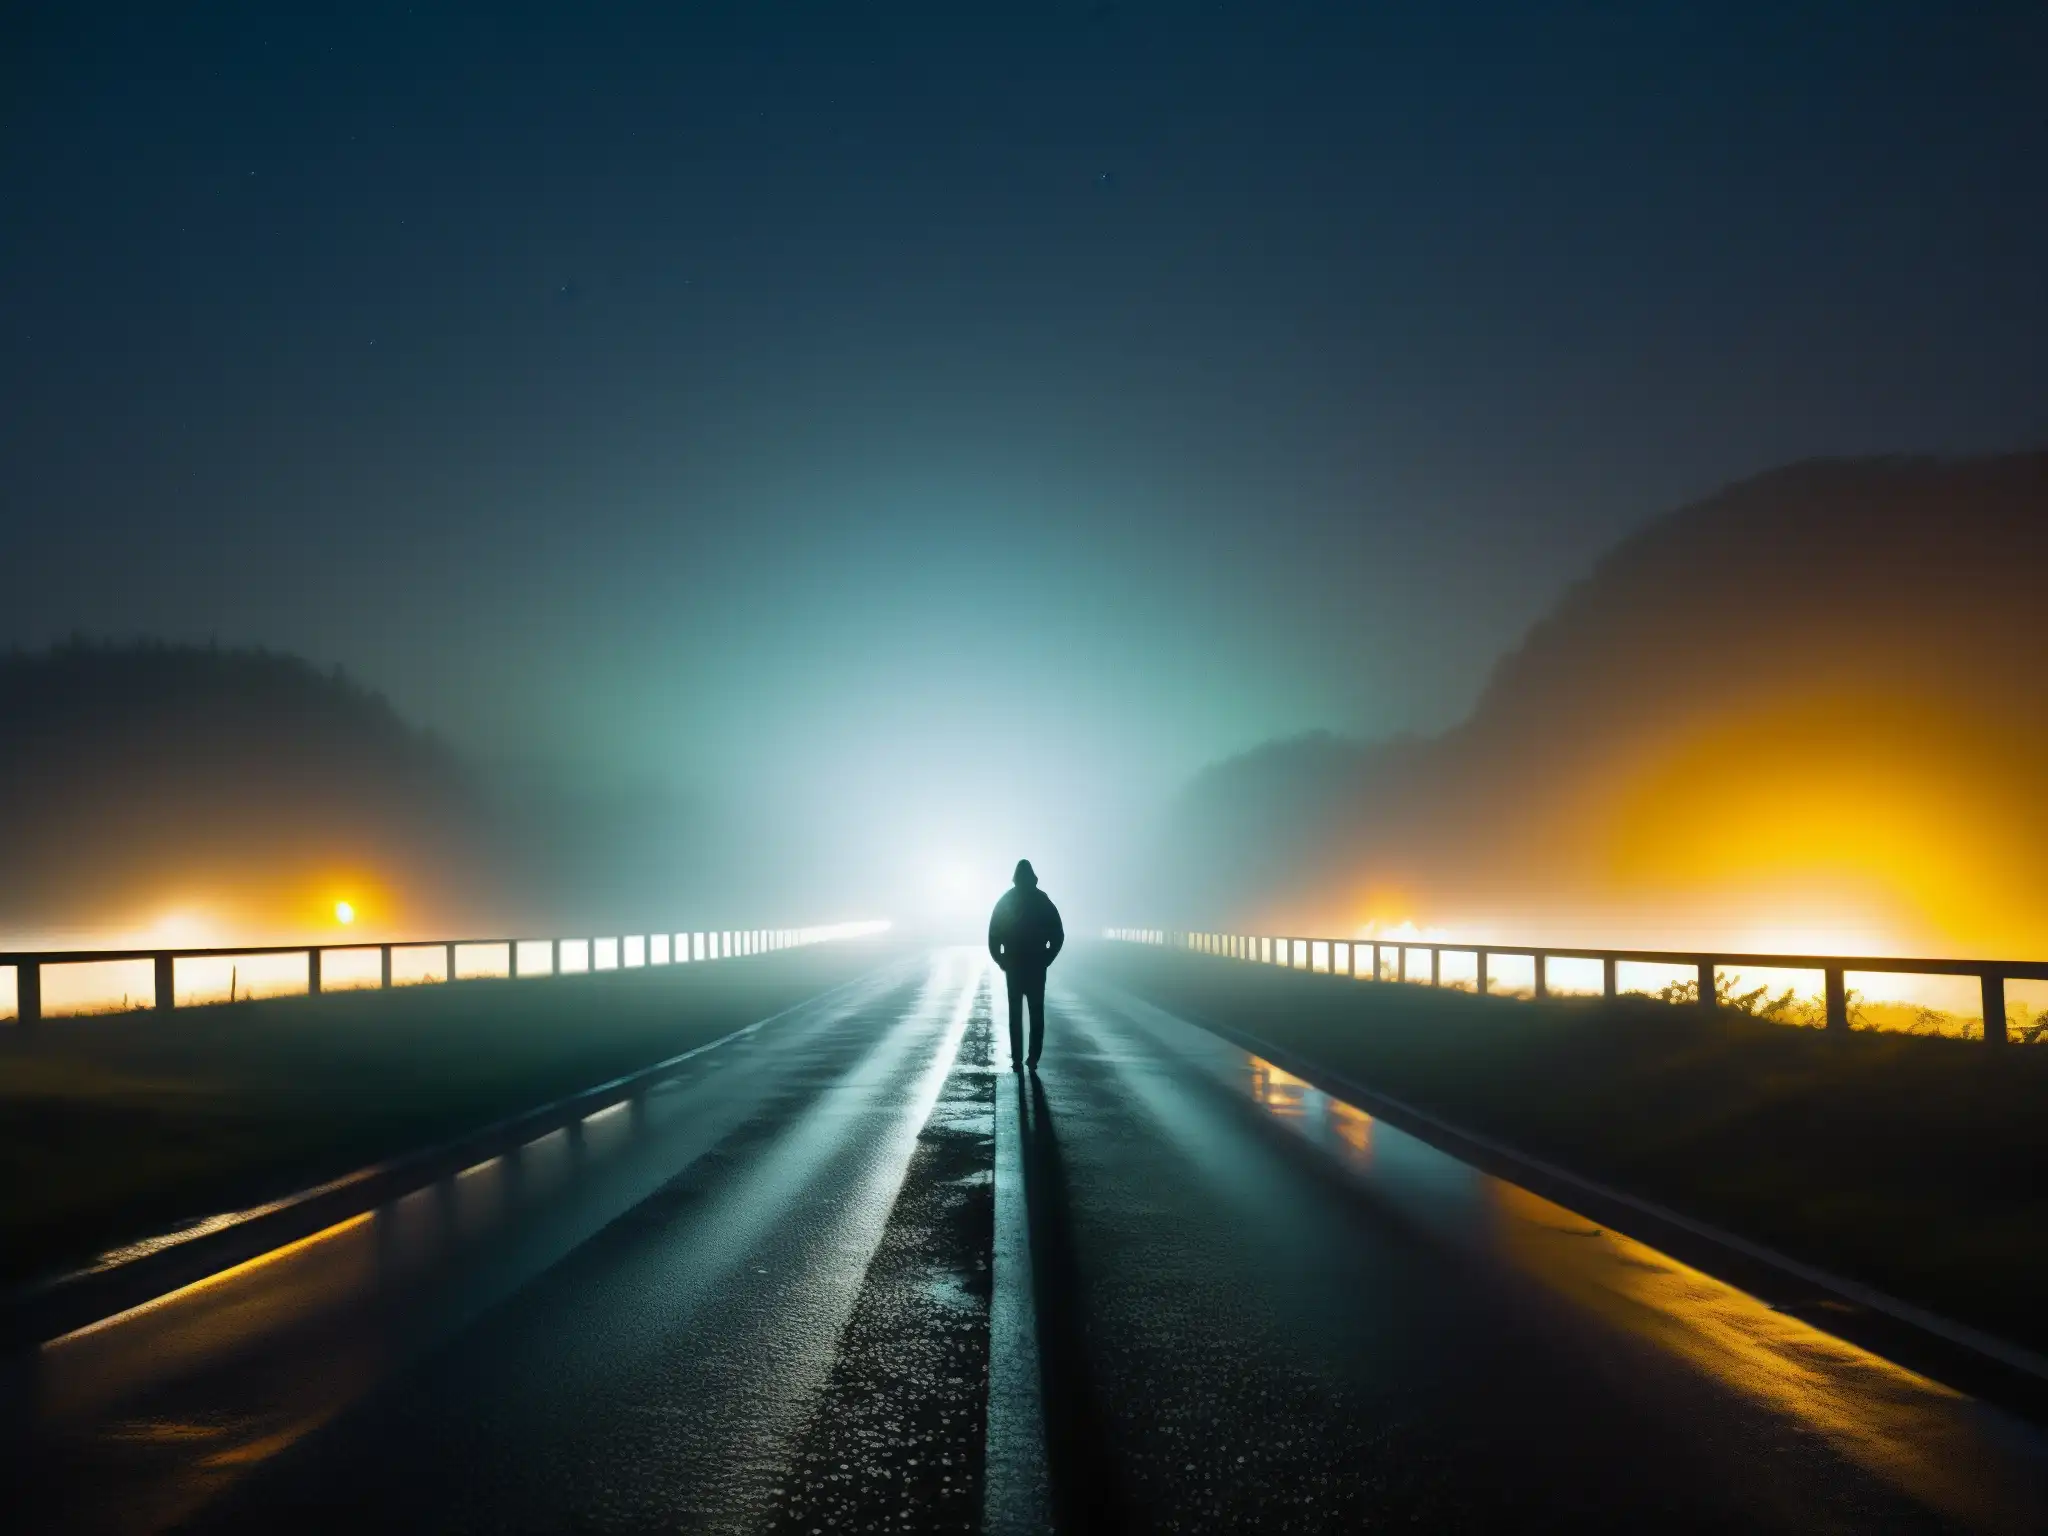 Un solitario espectro espera en una desolada carretera envuelta en neblina